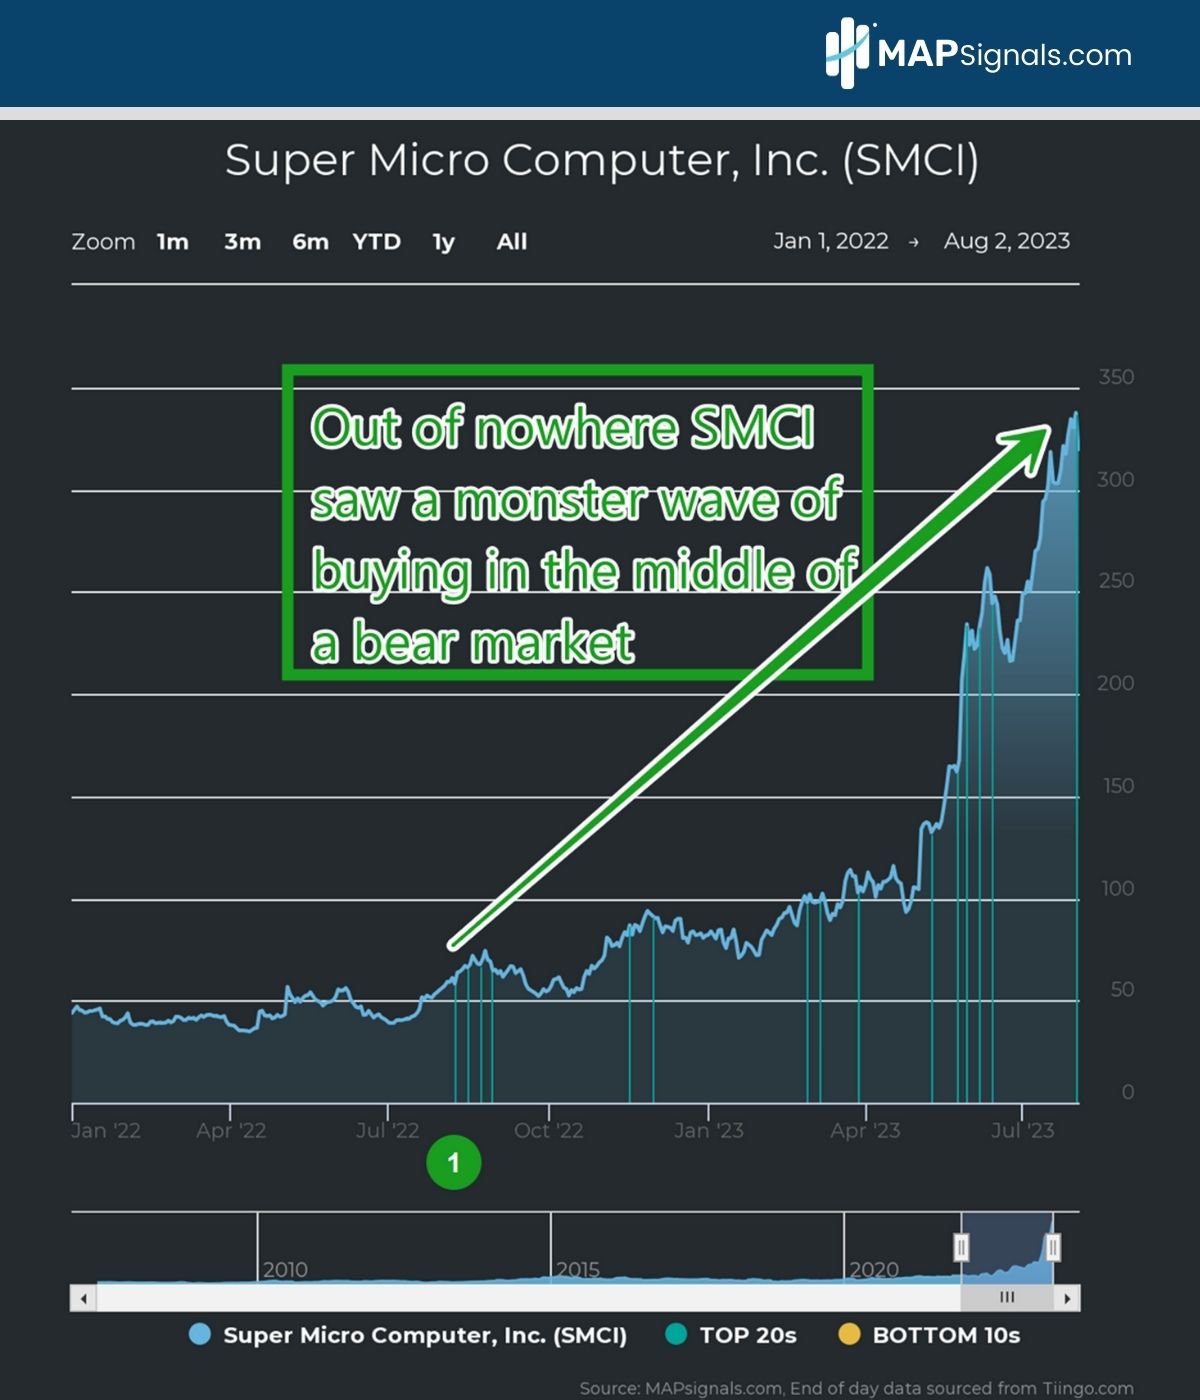 Super Micro Computer, Inc. (SMCI) | MAPsignals